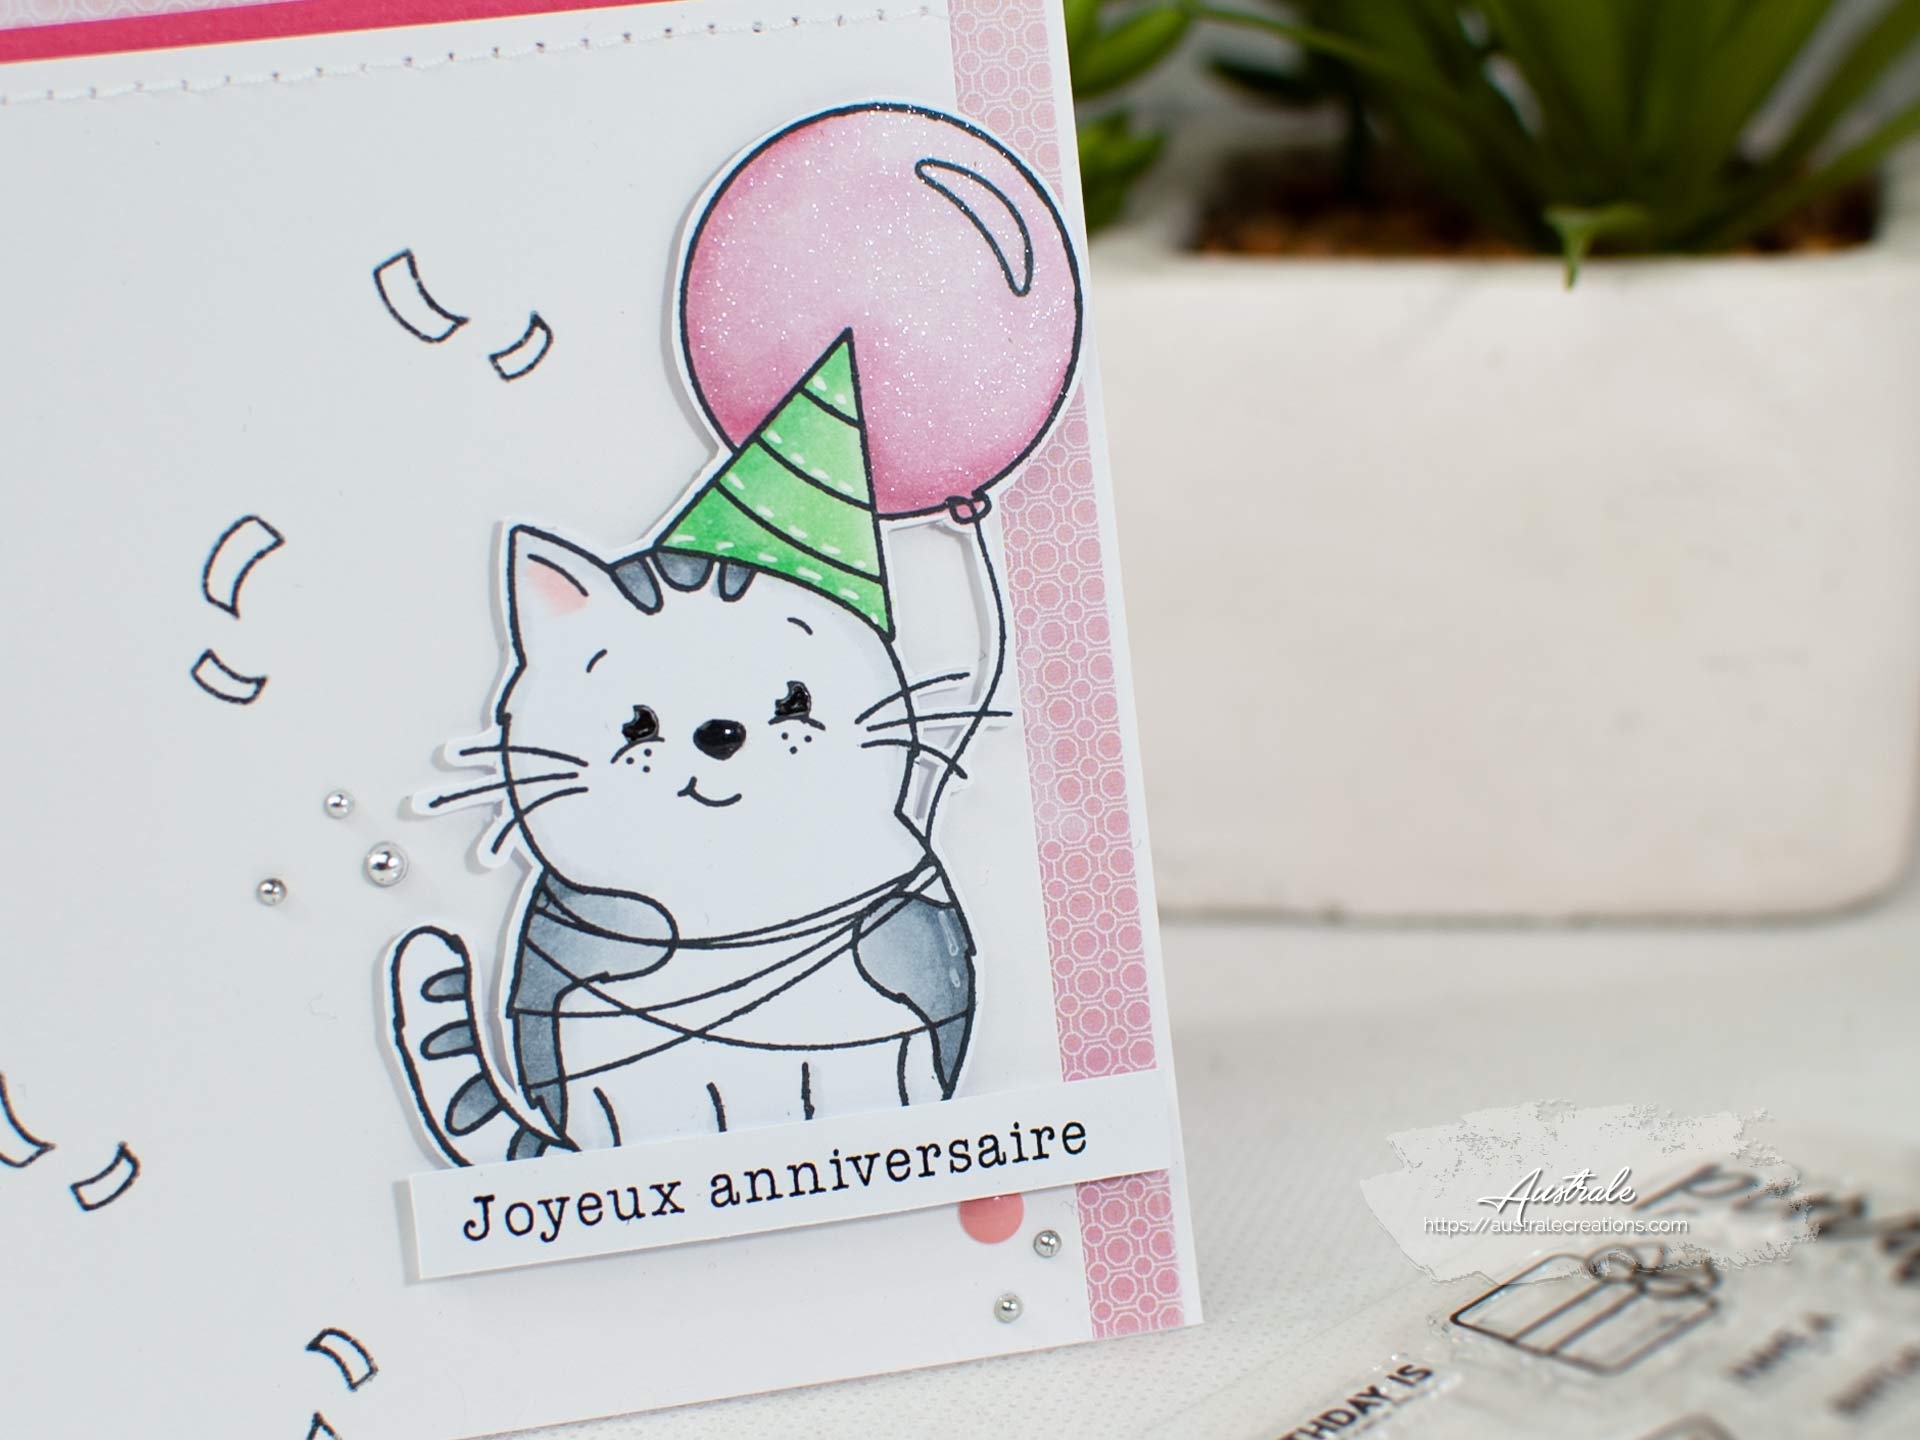 Création d'une carte d'anniversaire avec un adorable petit chat et son ballon sur fond rose.